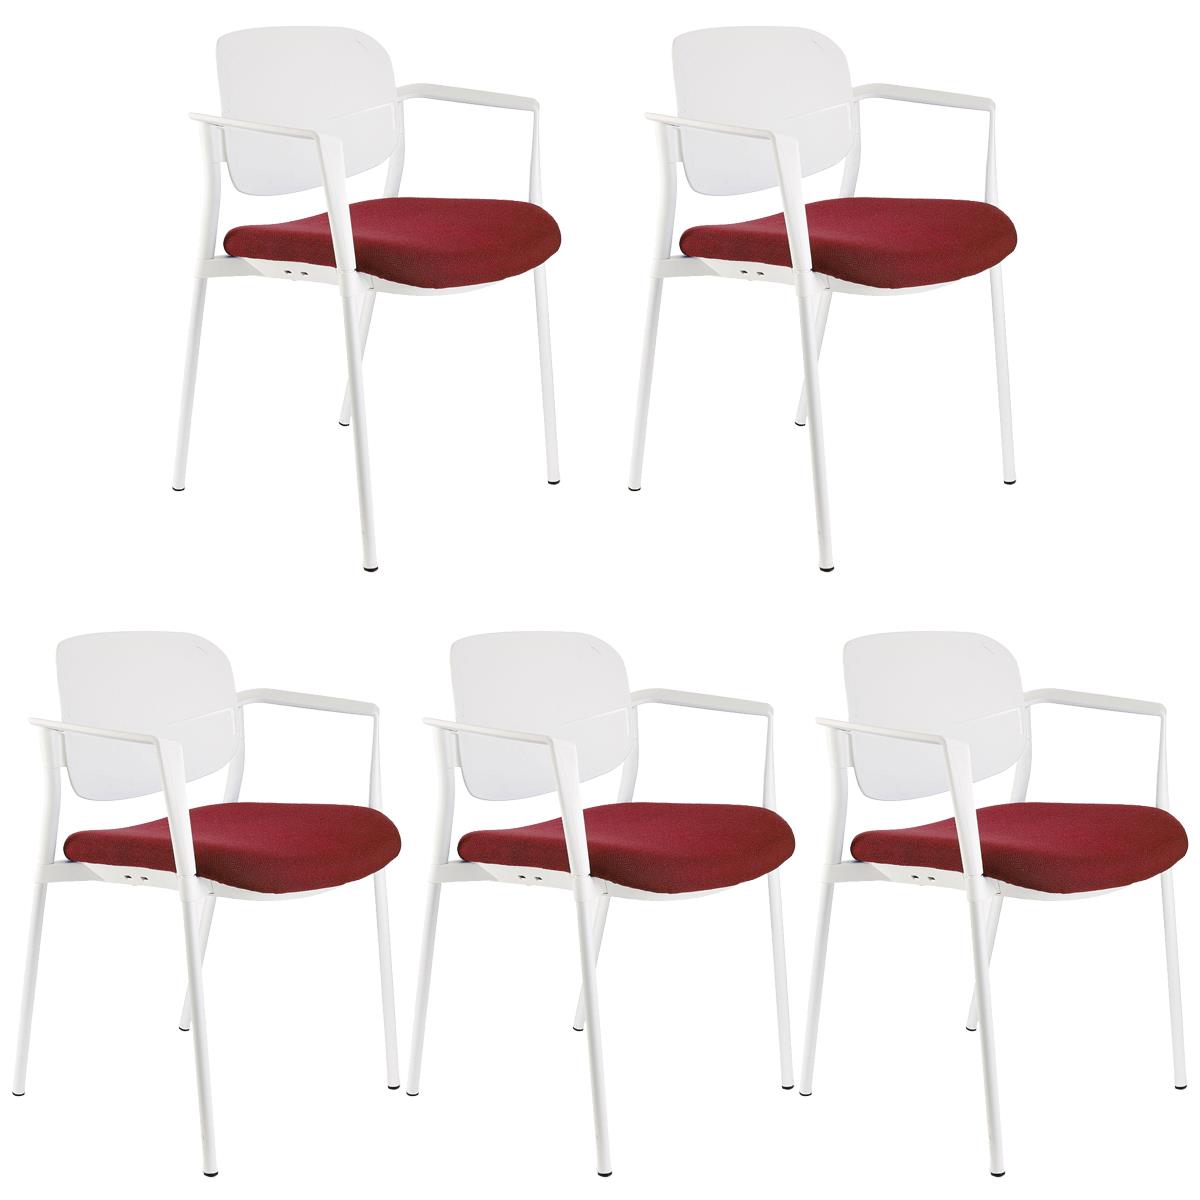 Lote 5 Cadeiras de Visita ERIC COM BRAÇOS, Confortável e Empilhável, Cor Bordeaux